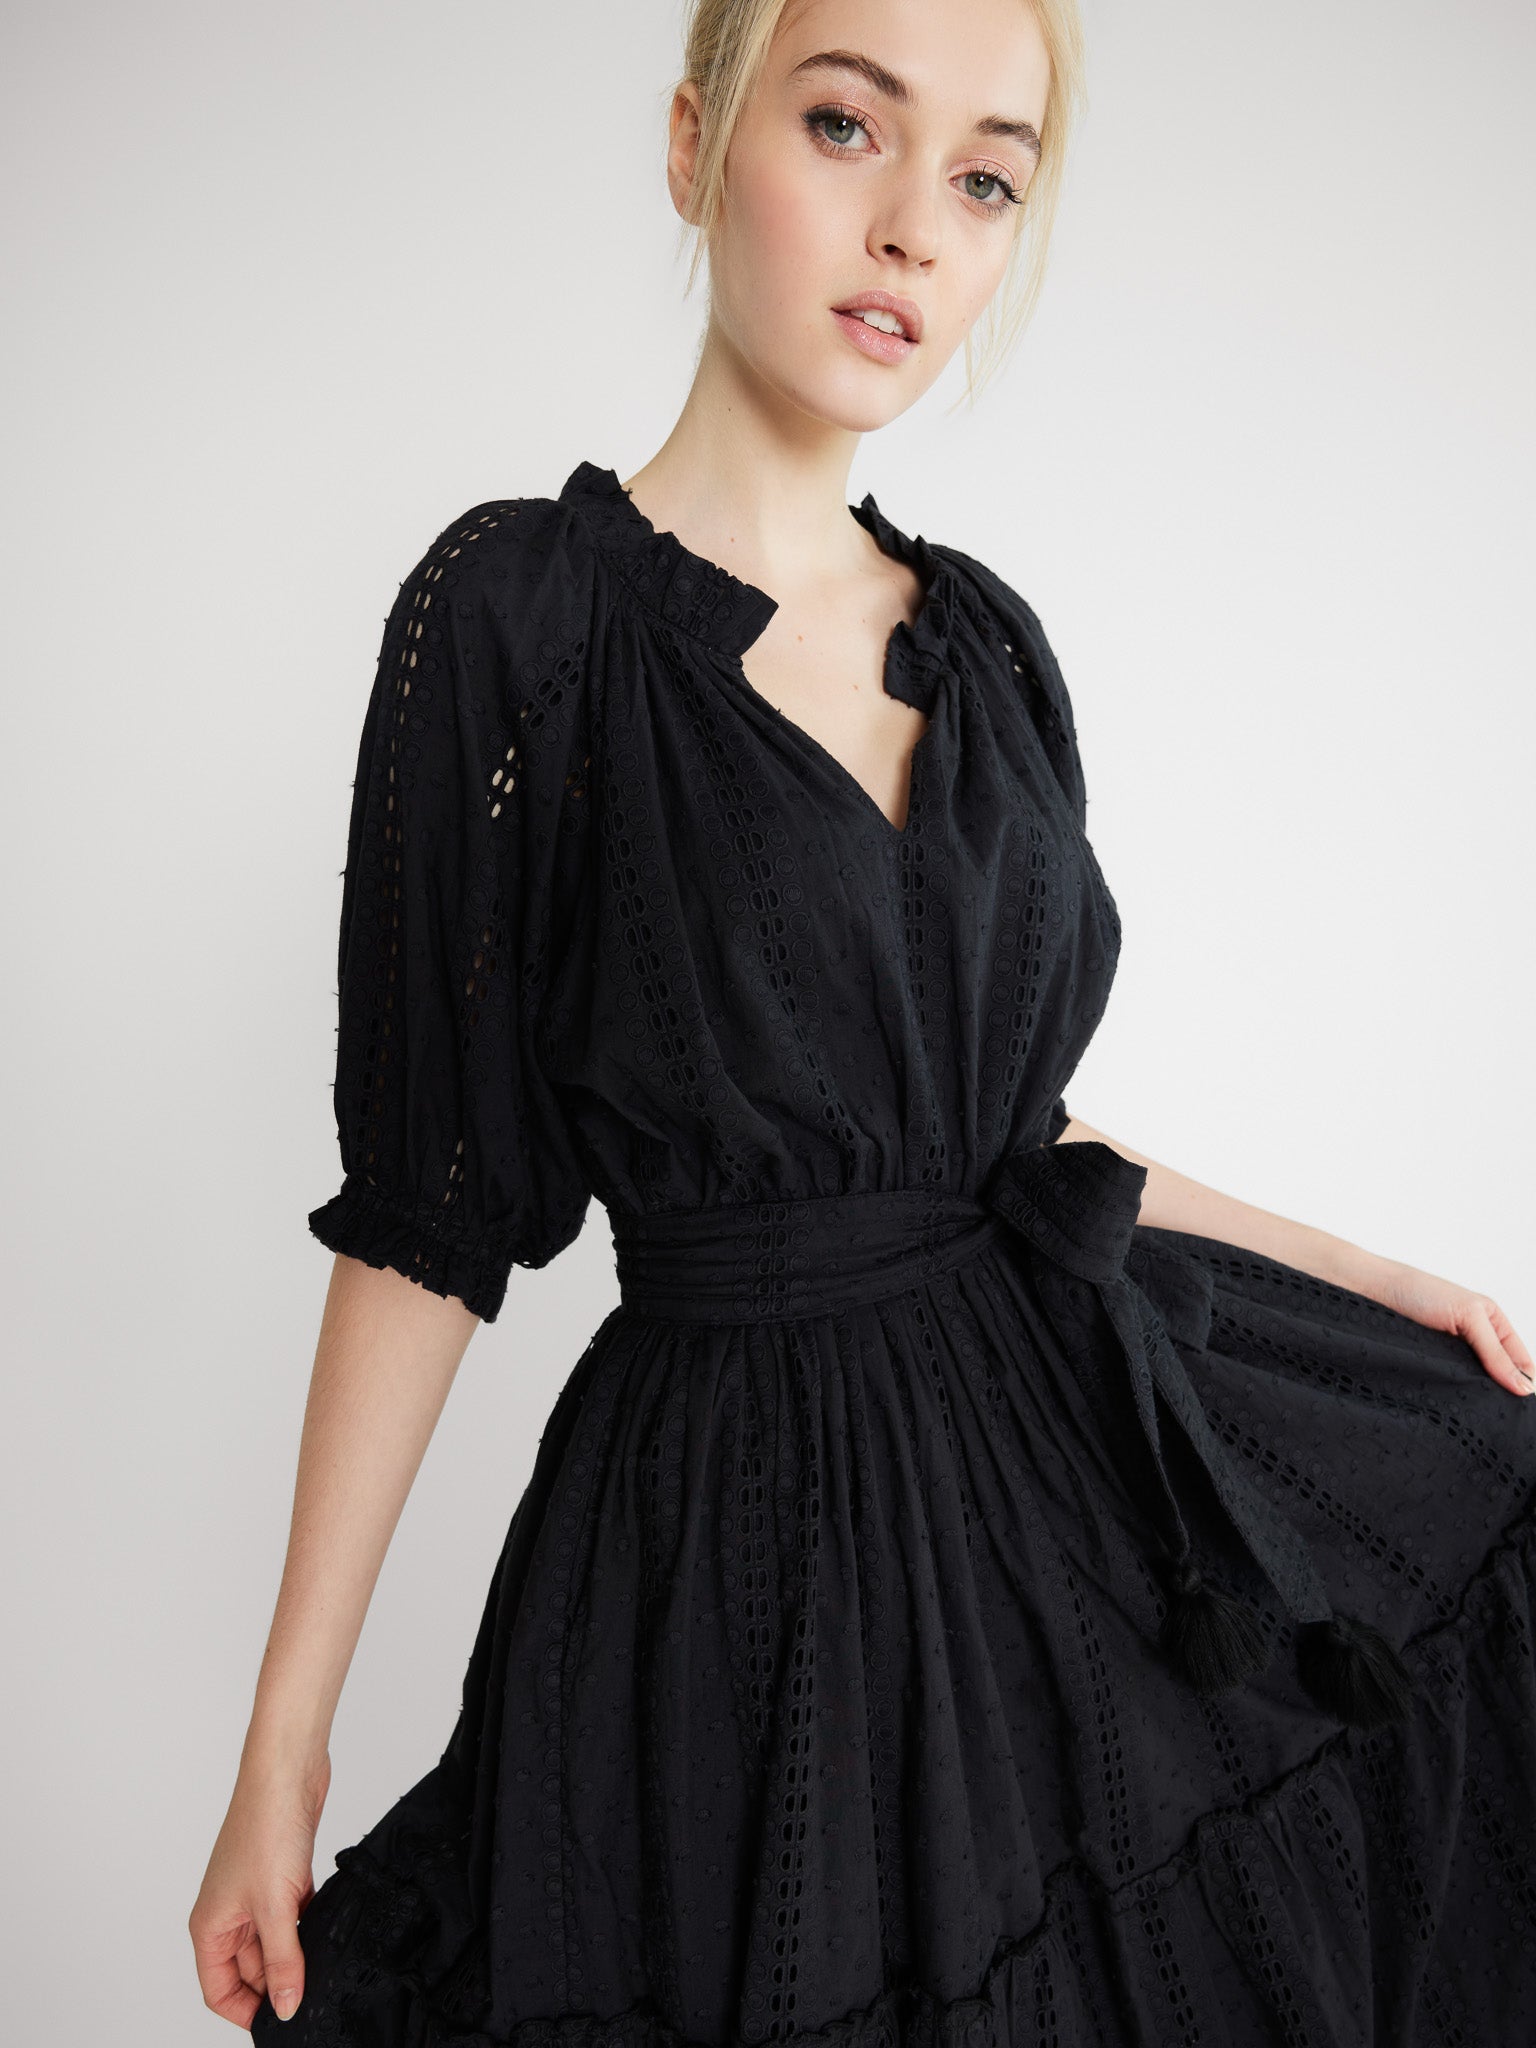 Belted Short Sleeve V-Neck Dress - Black - Kiki